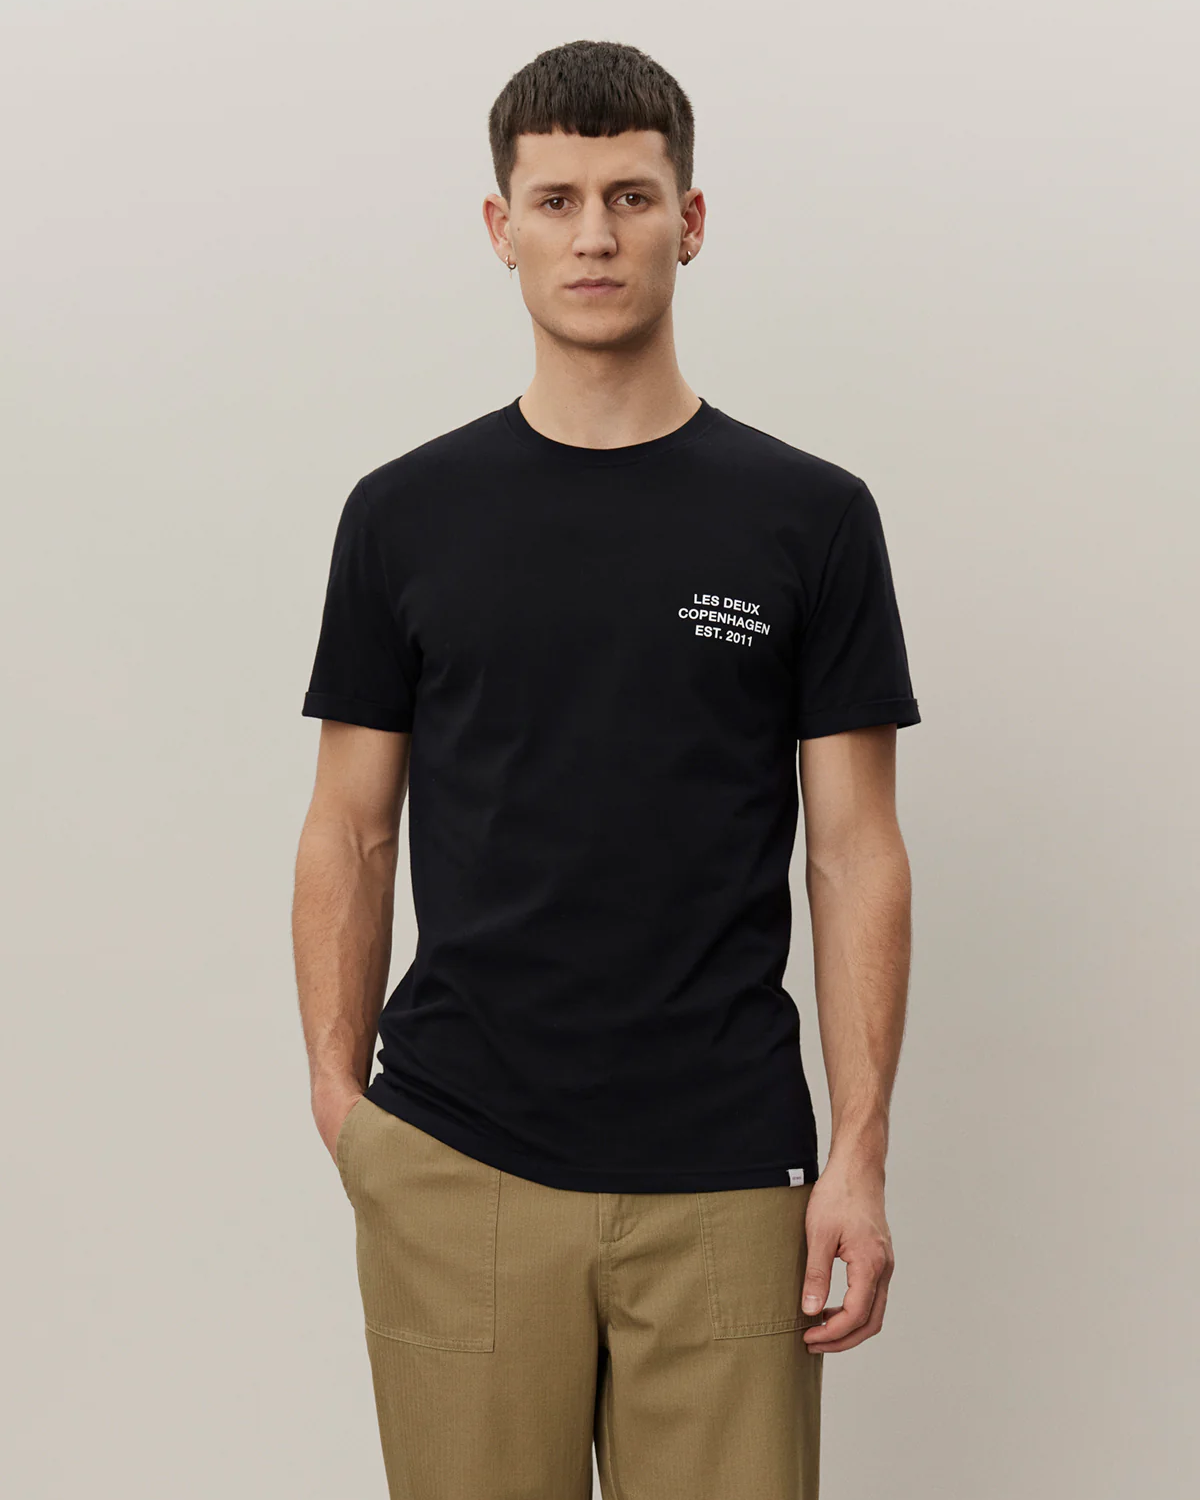 Copenhagen T-Shirt Black - Les Deux